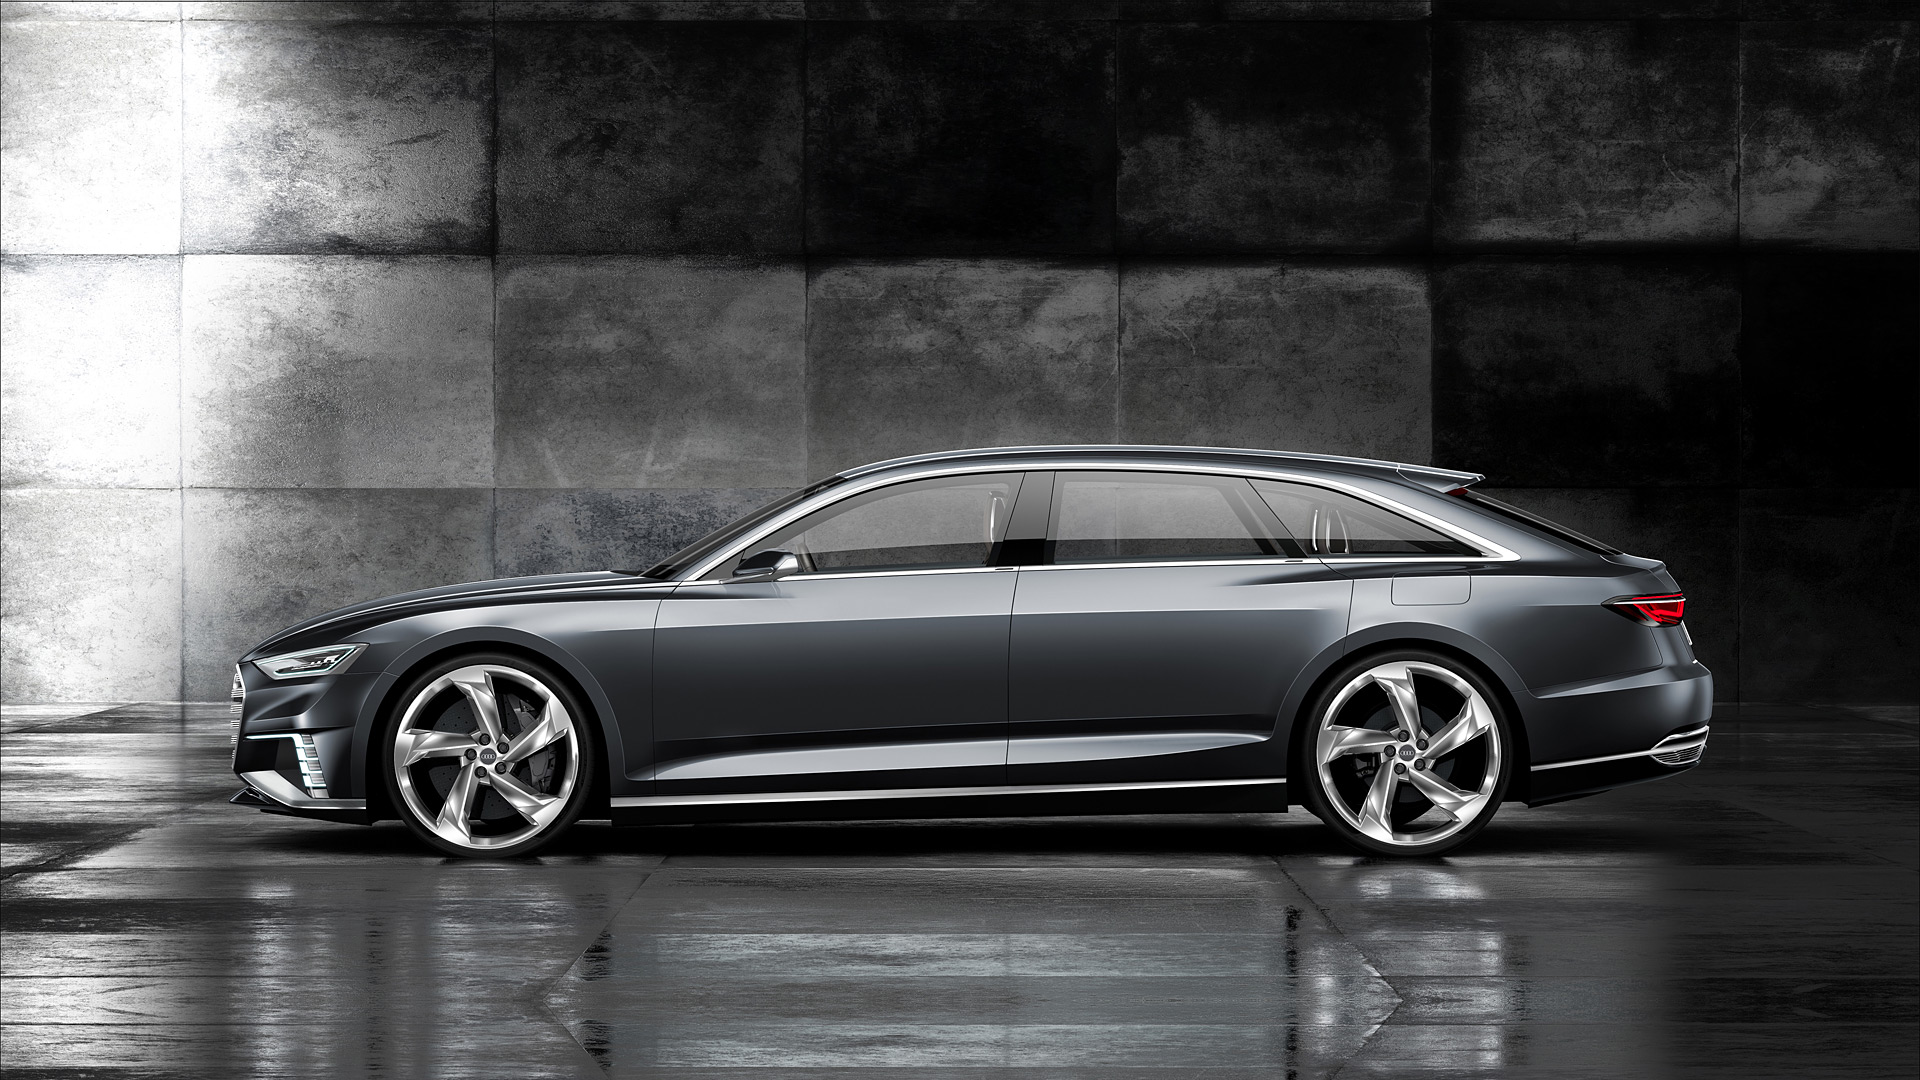  2015 Audi Prologue Avant Concept Wallpaper.